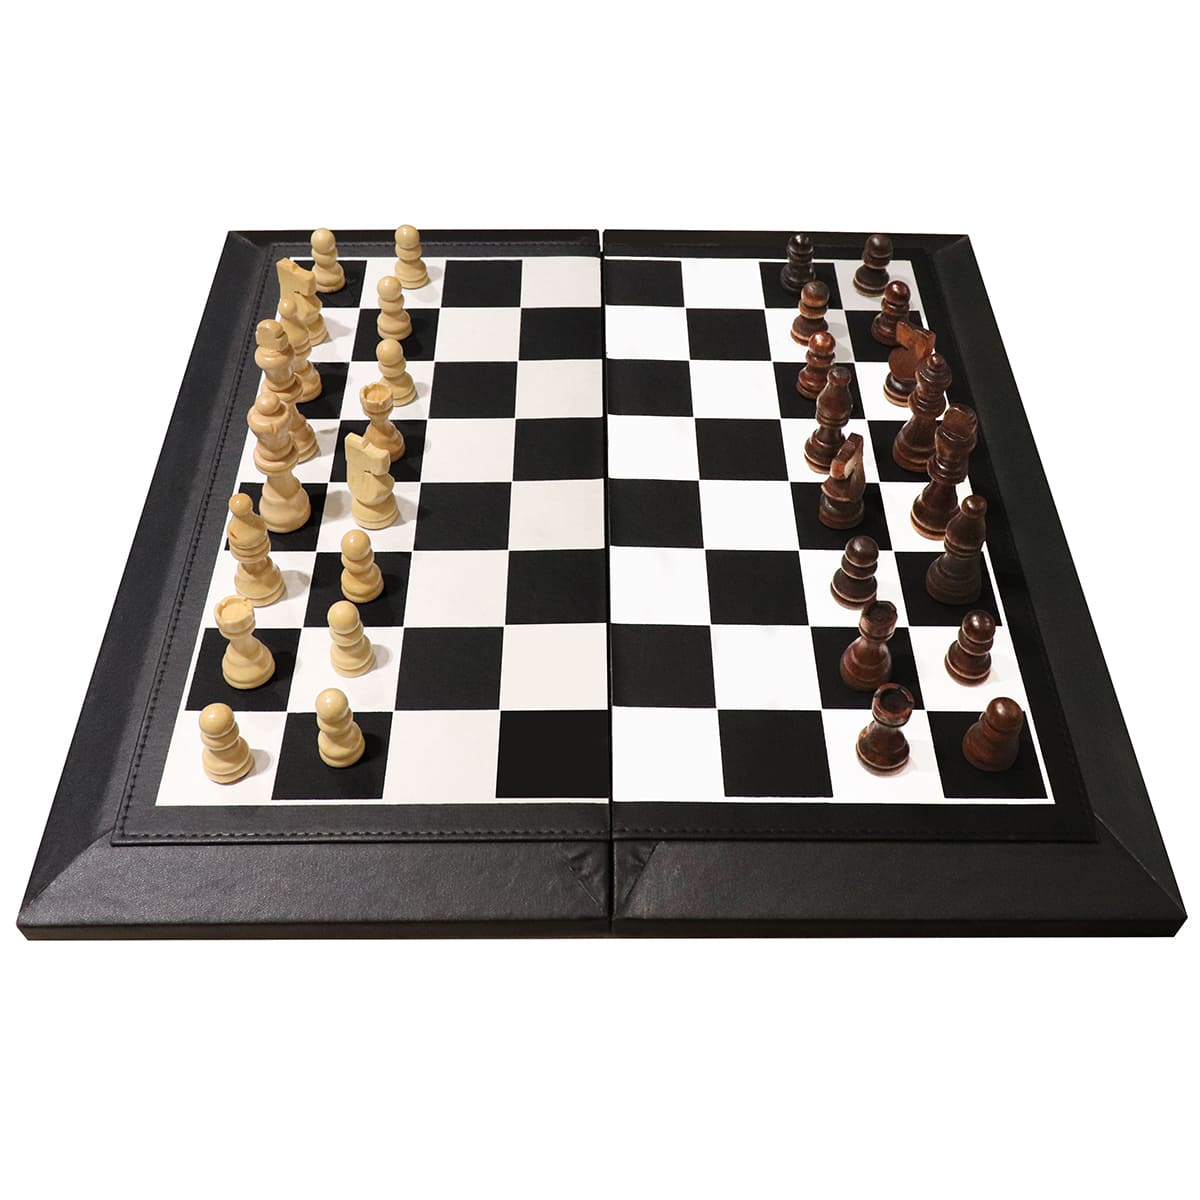 西洋棋經典棋盤遊戲 - 磁性旅行折疊盒